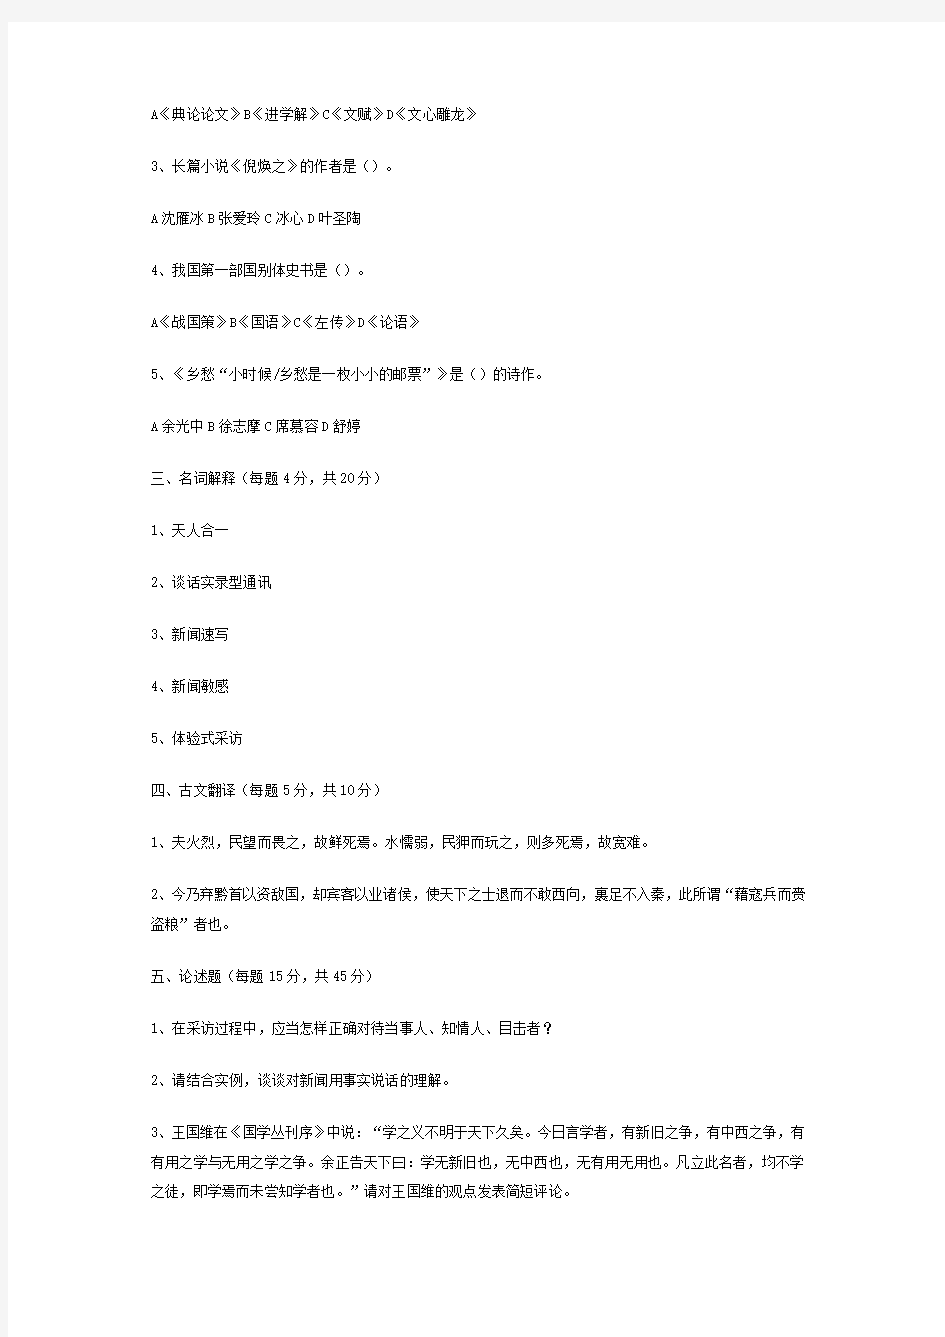 2006年南京大学新闻采写与文史知识